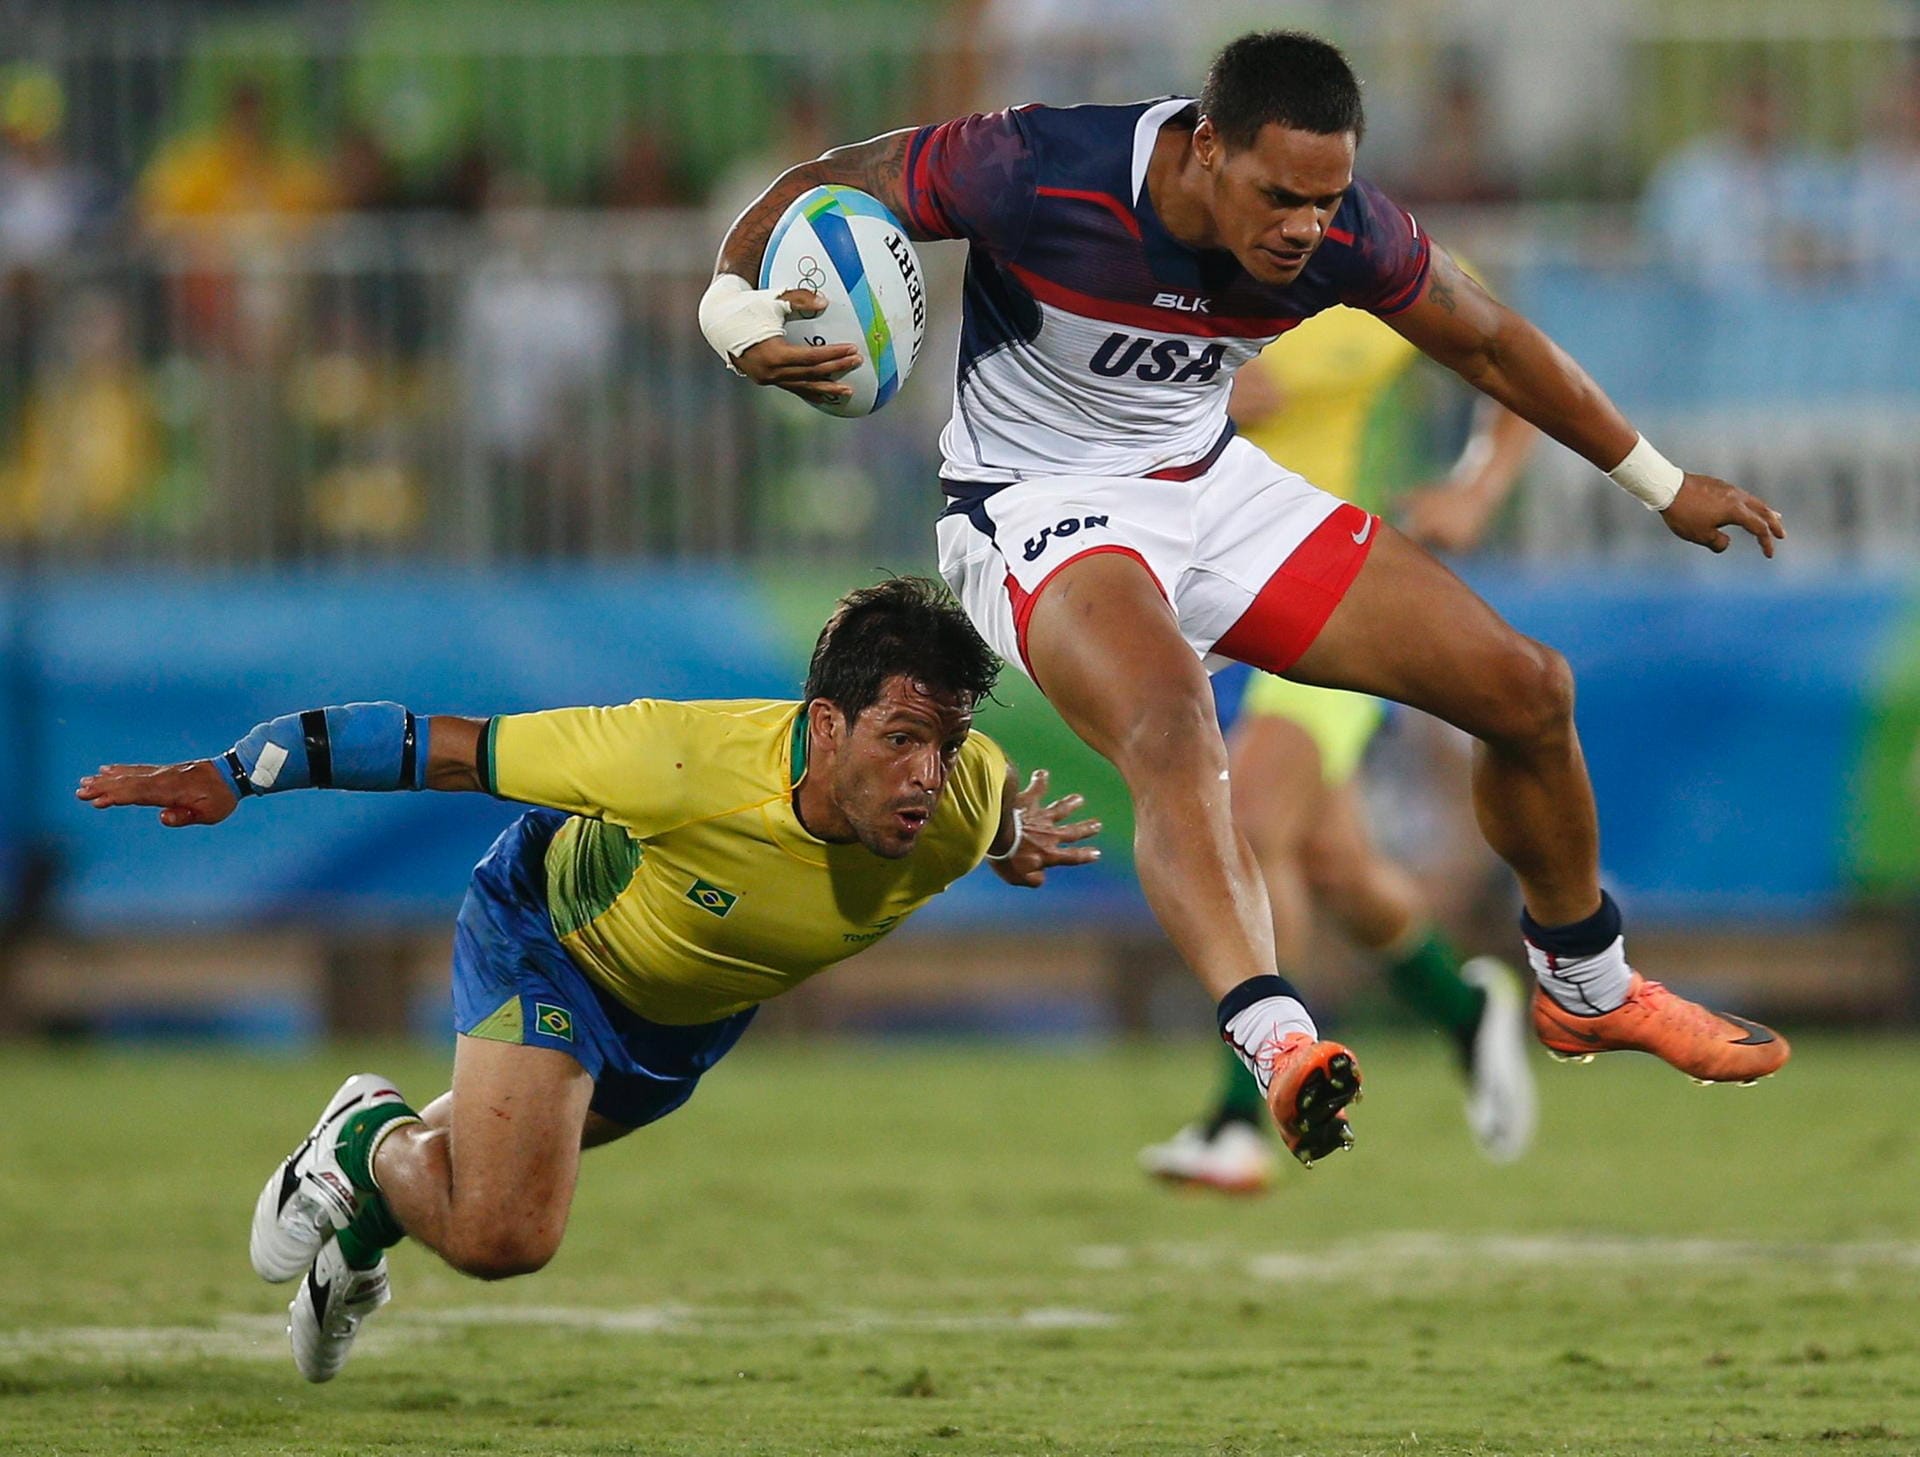 Rugby beflügelt: Der Brasilianer Luca Duqe hob im Vollsprint zum Tackling gegen Maka Unufe aus den USA ab. Beide zeigten eine Flugshow par excellence.